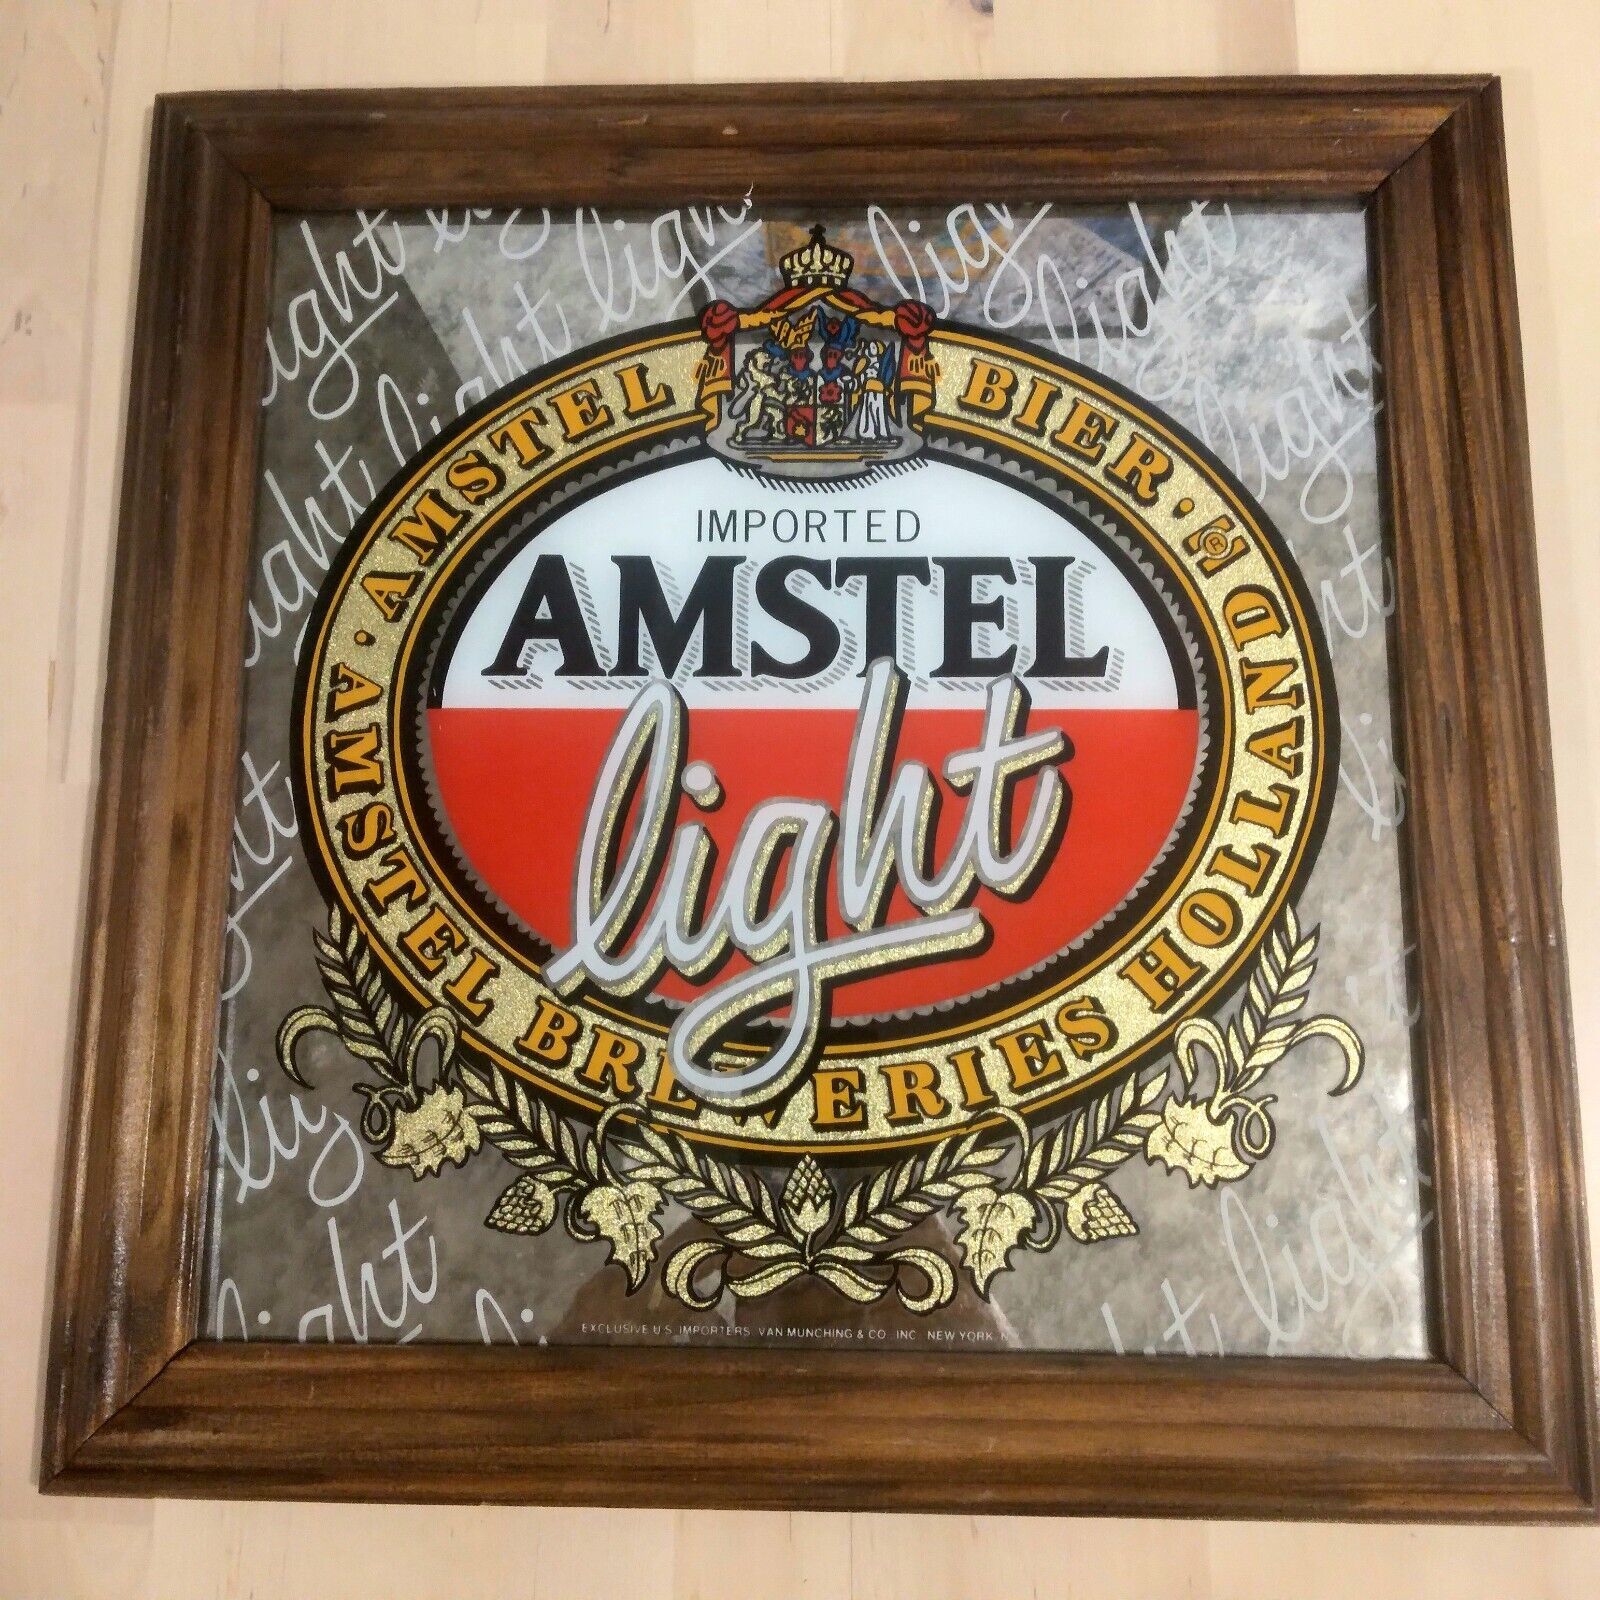 Imported Amstel Light Mirror Sign, Square Wood frame, Vintage